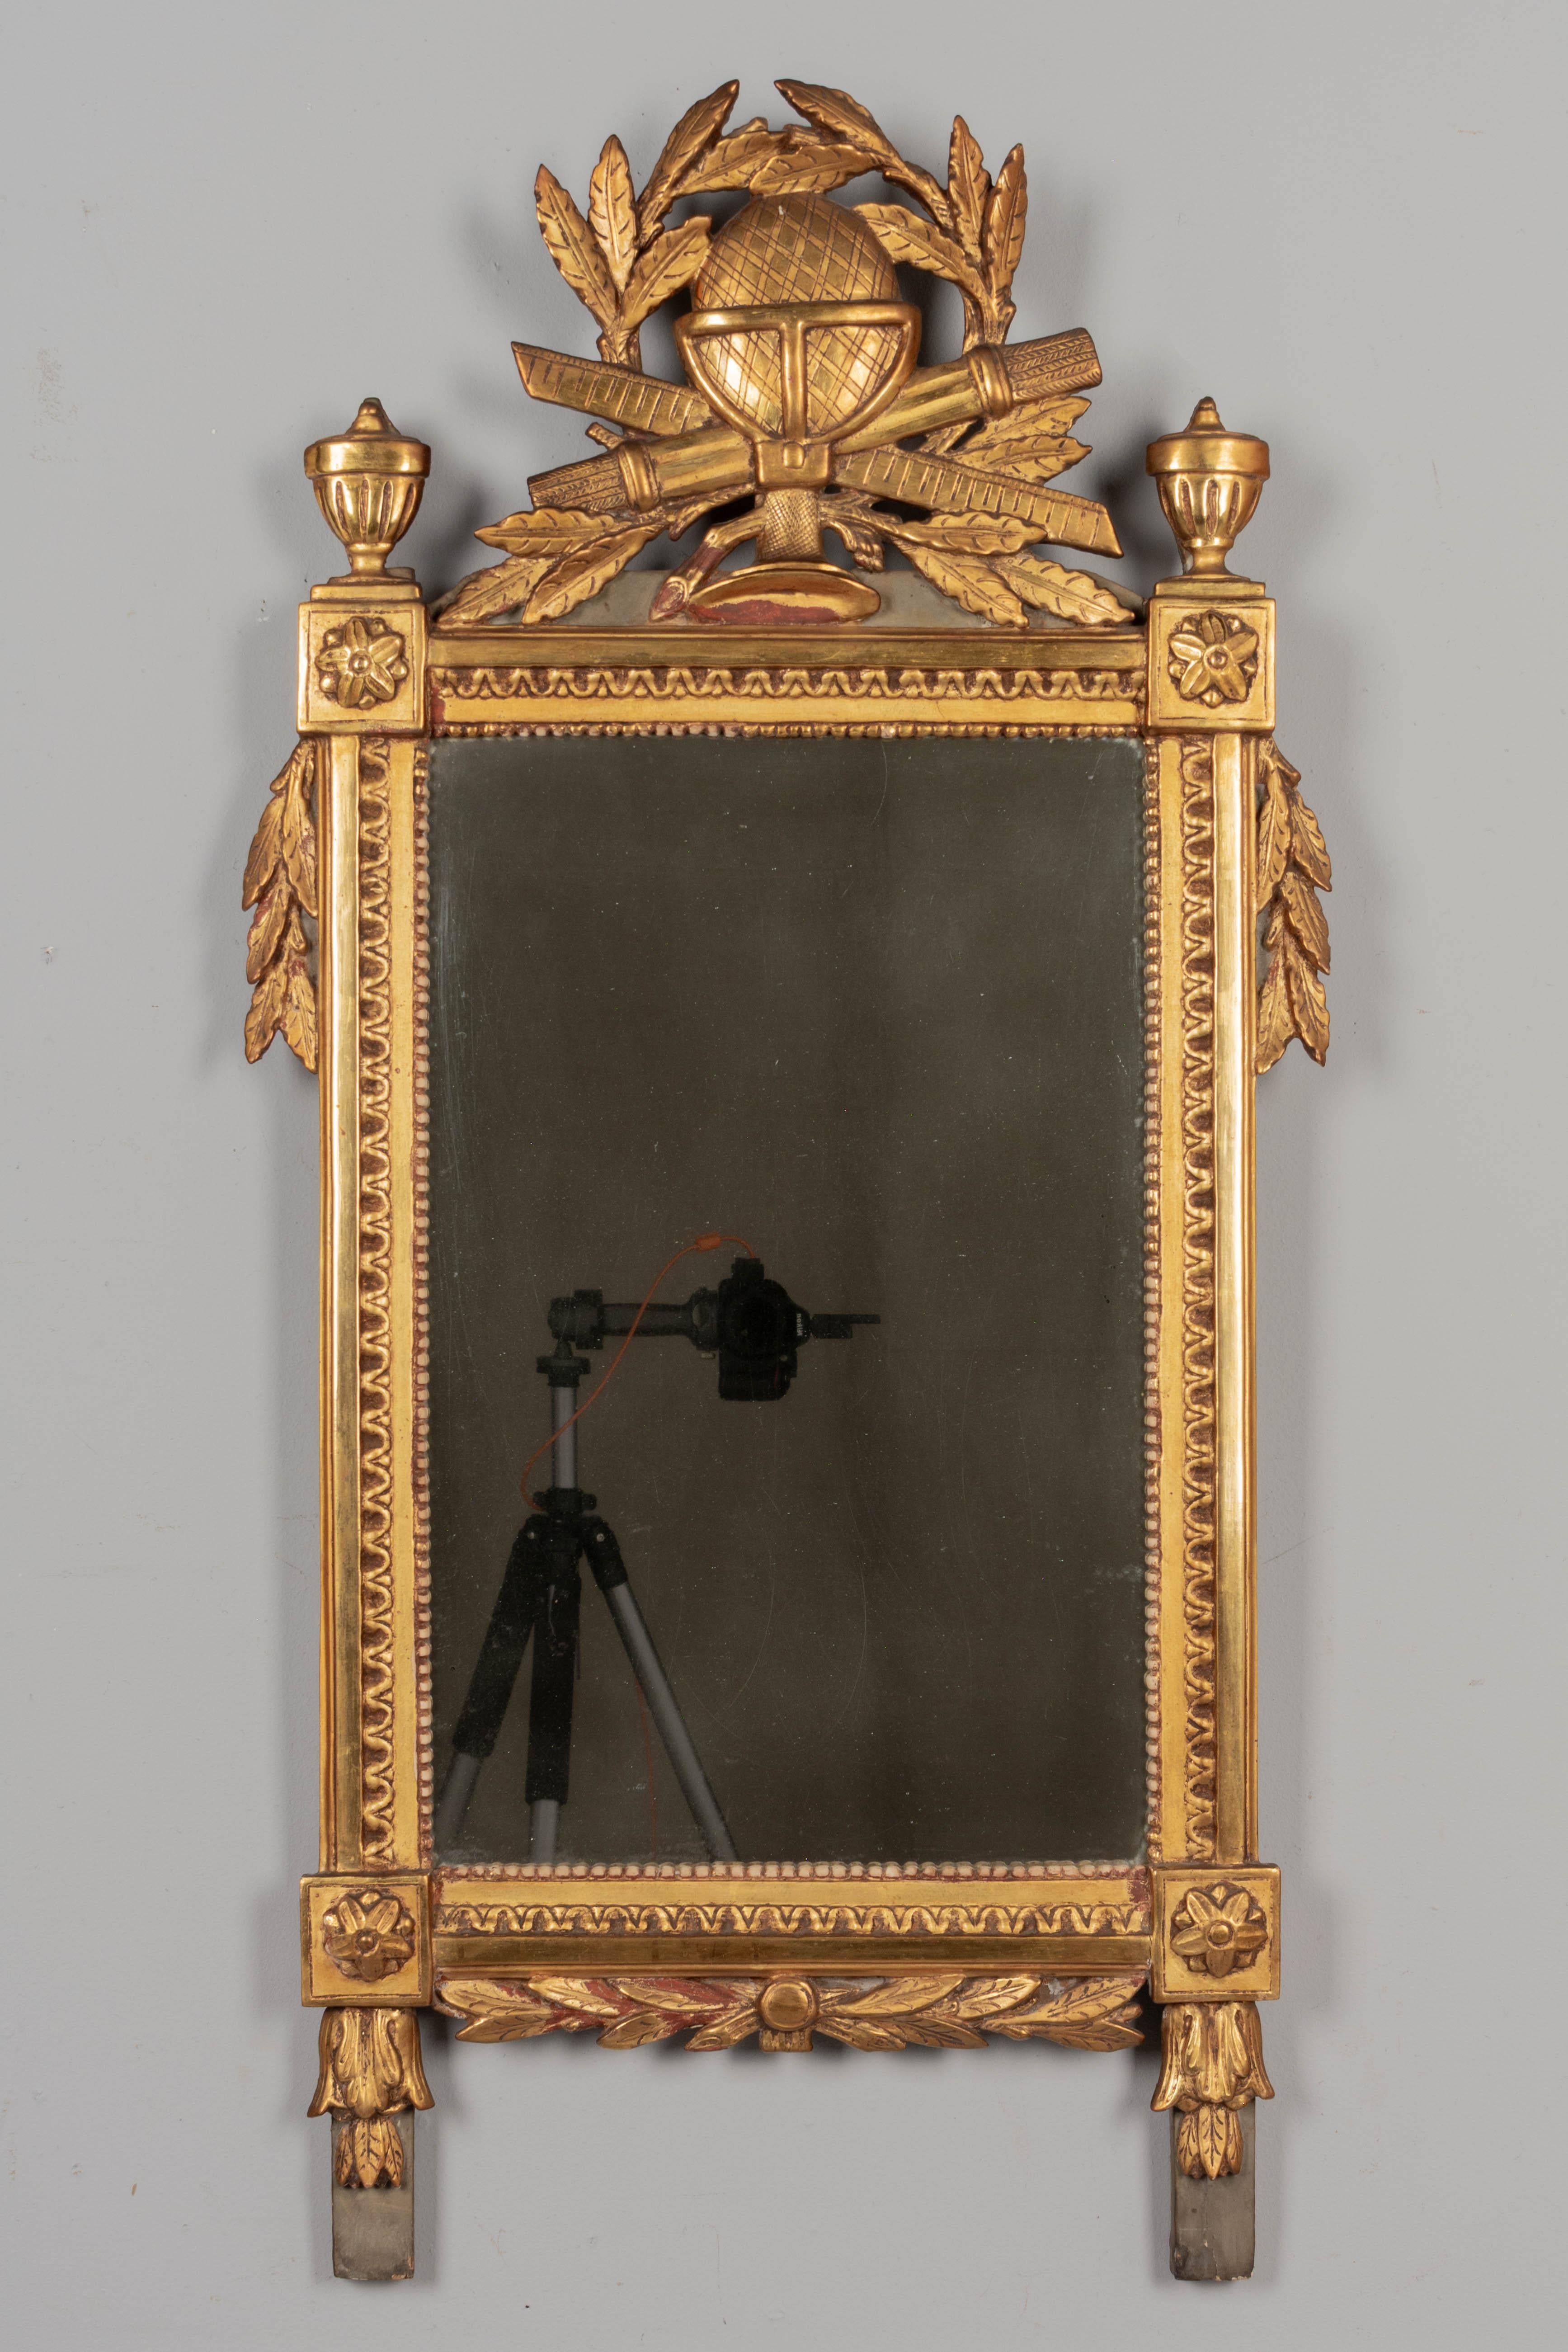 Miroir en bois doré de style Louis XVI du XVIIIe siècle. Cadre en pin sculpté avec finition dorée et détails peints en vert-de-gris. Cimier magnifiquement détaillé et sculpté à la main avec un orbe entouré d'une couronne de laurier et de guirlandes